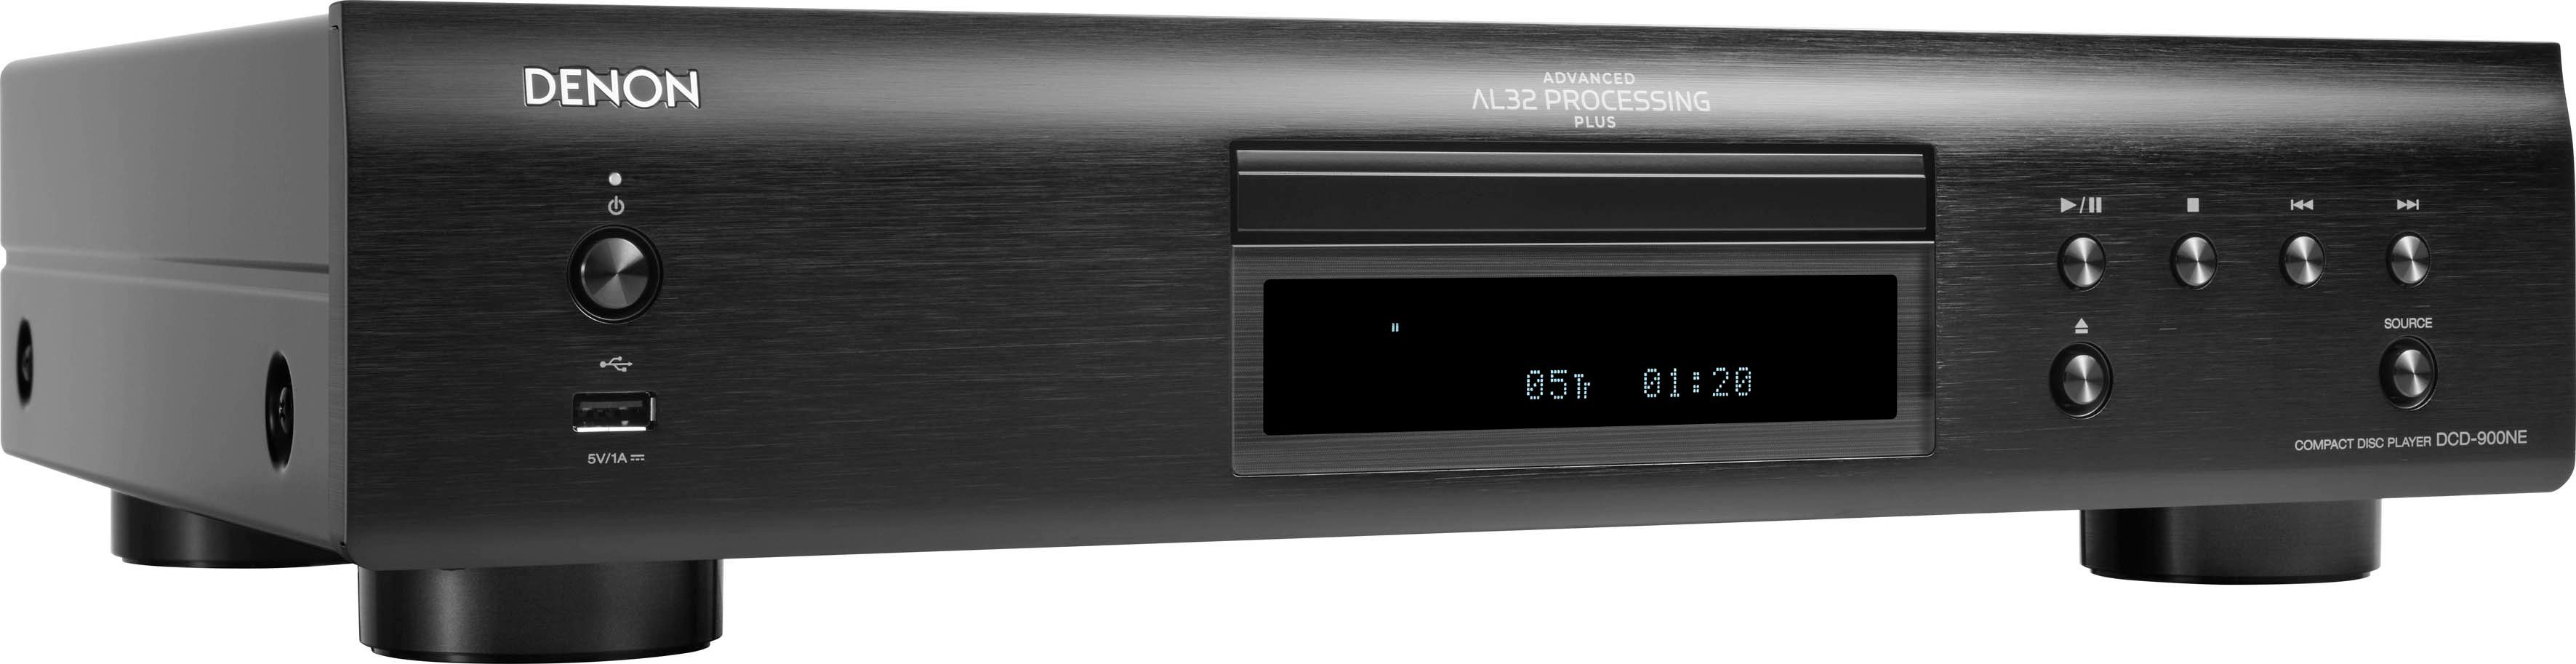 schwarz DCD-900NE CD-Player Denon (USB-Audiowiedergabe)